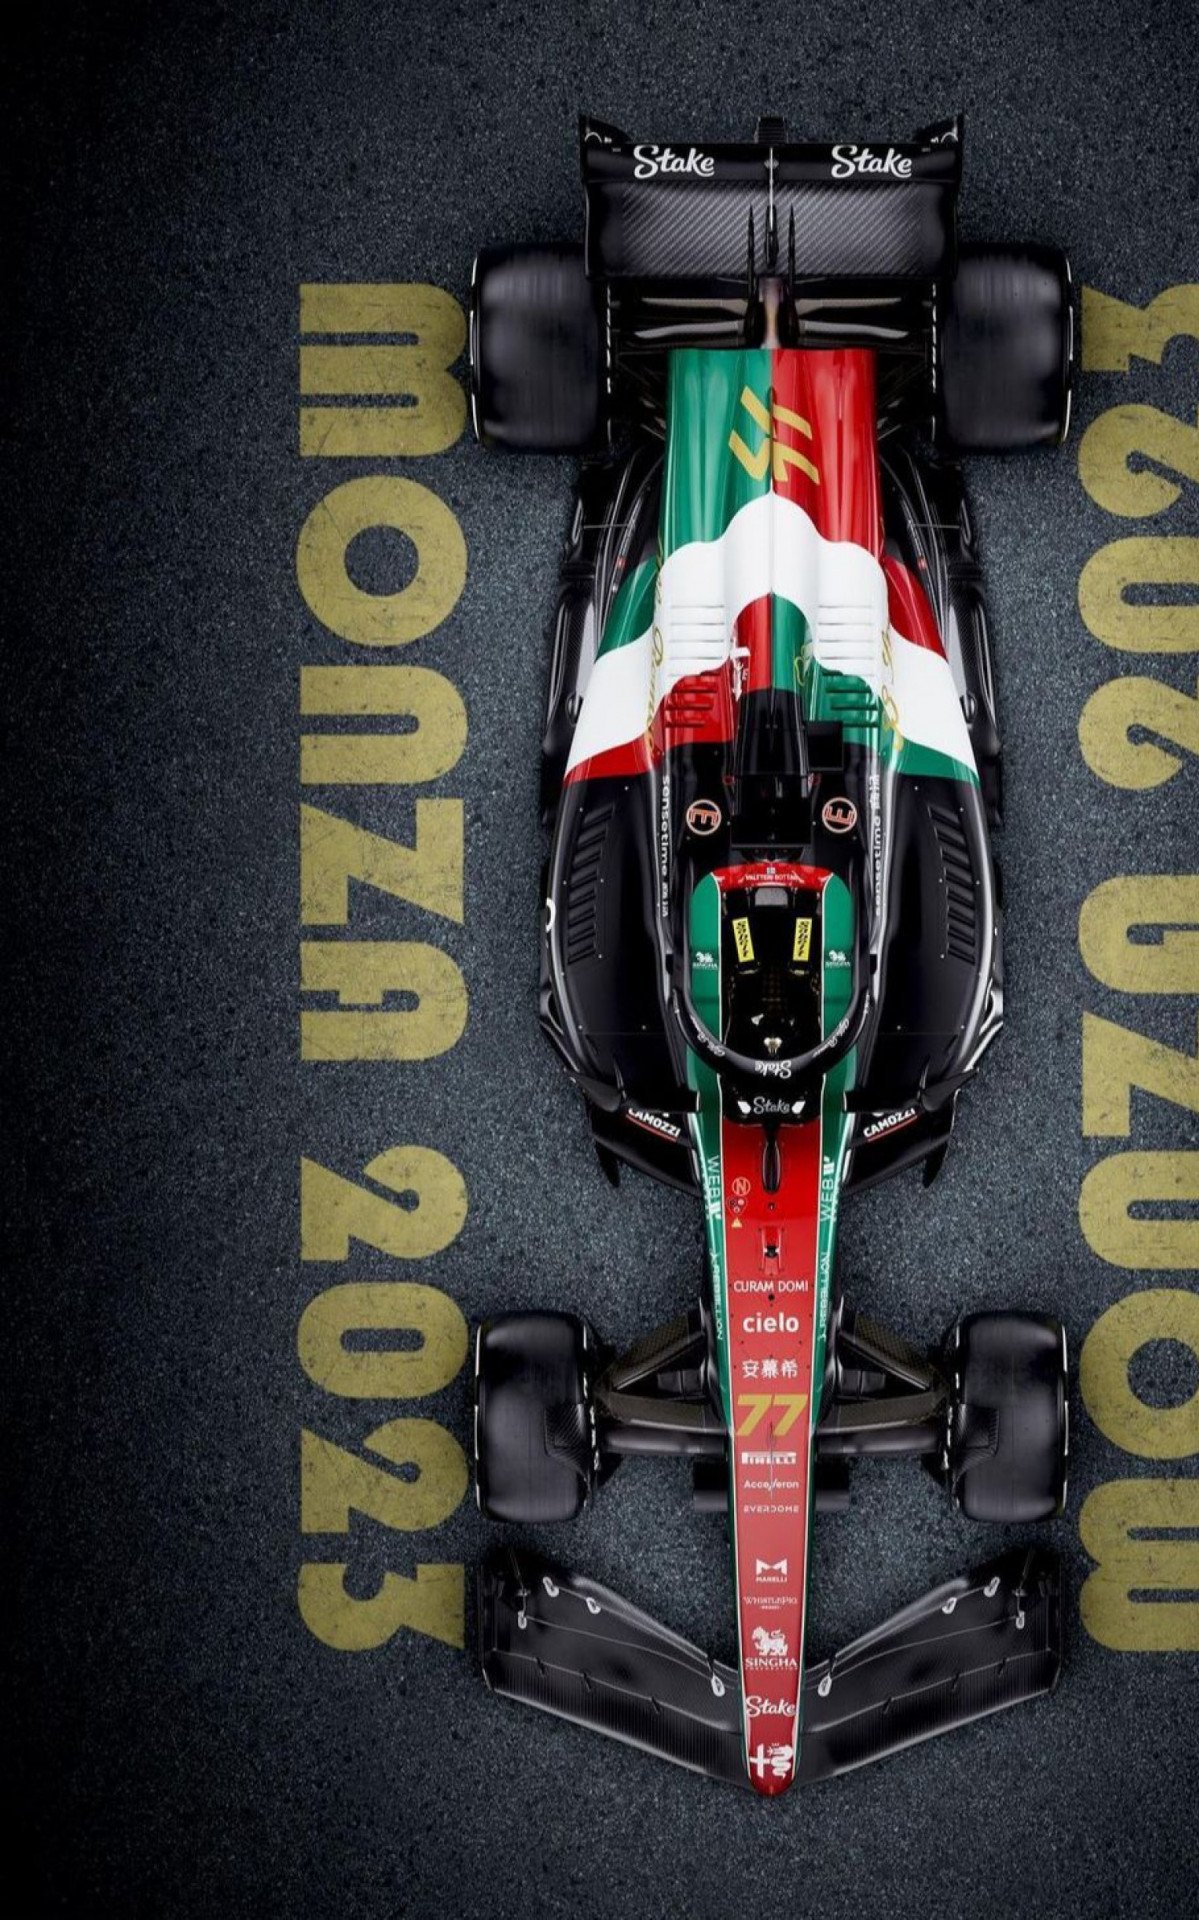 Alfa Romeo divulga pintura especial para o GP da Itália  - Divulgação/Alfa Romeo